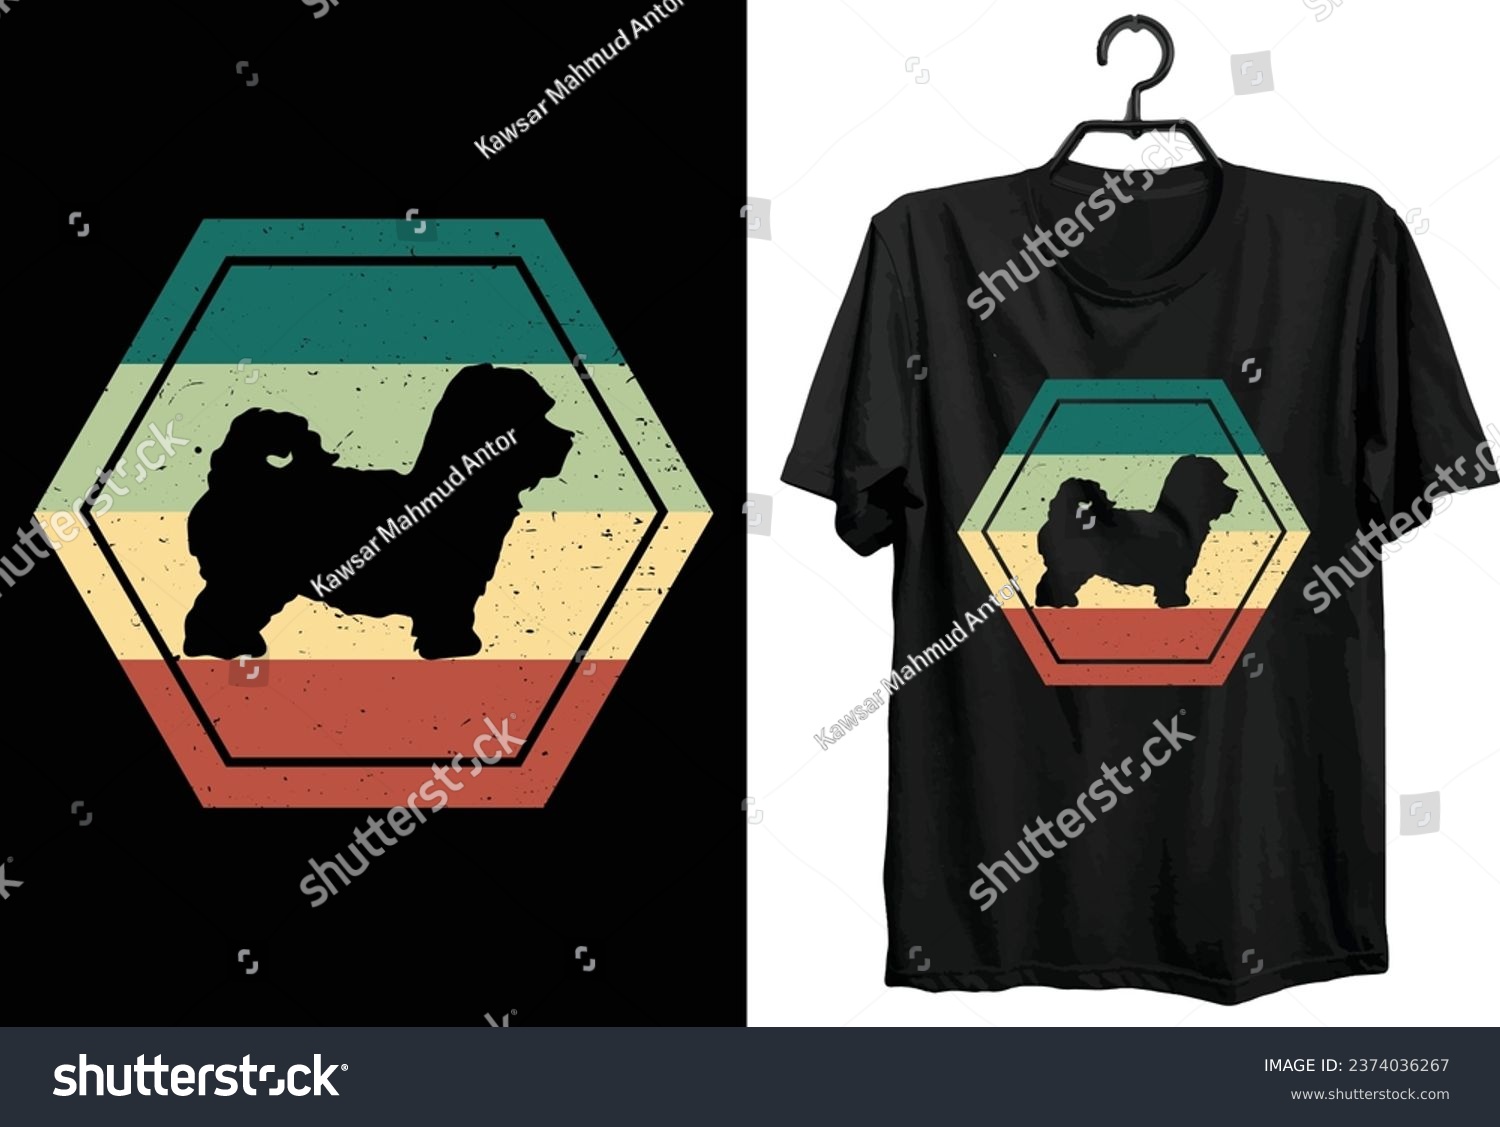 SVG of Maltipoo Dog T-shirt Design. Funny Gift Item Maltipoo Dog T-shirt Design For Dog Lovers And People. svg